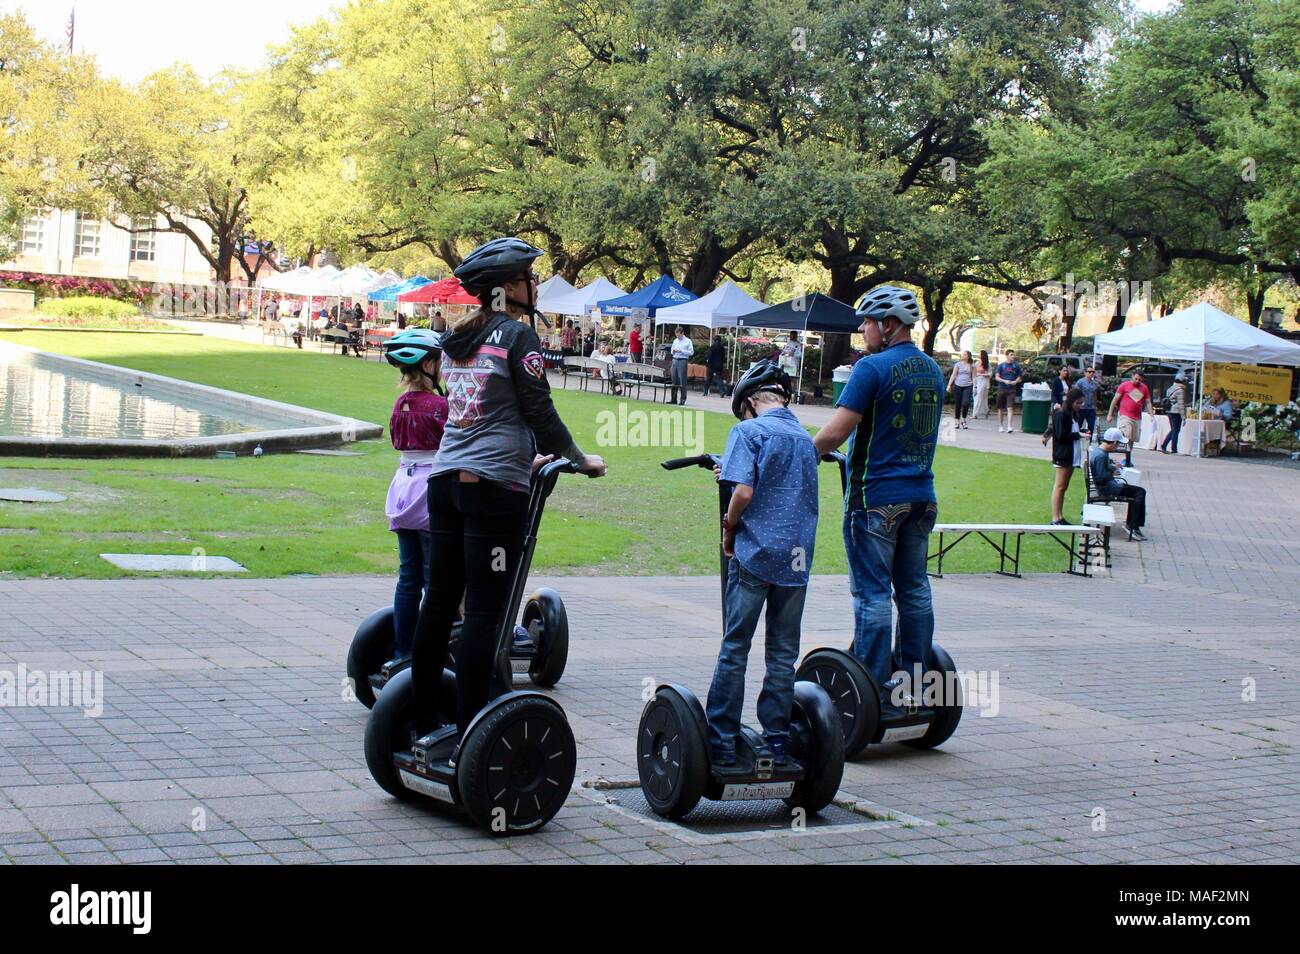 Un groupe familial sur l'utilisation d'un Segway dans un parc de Houston Texas USA Banque D'Images